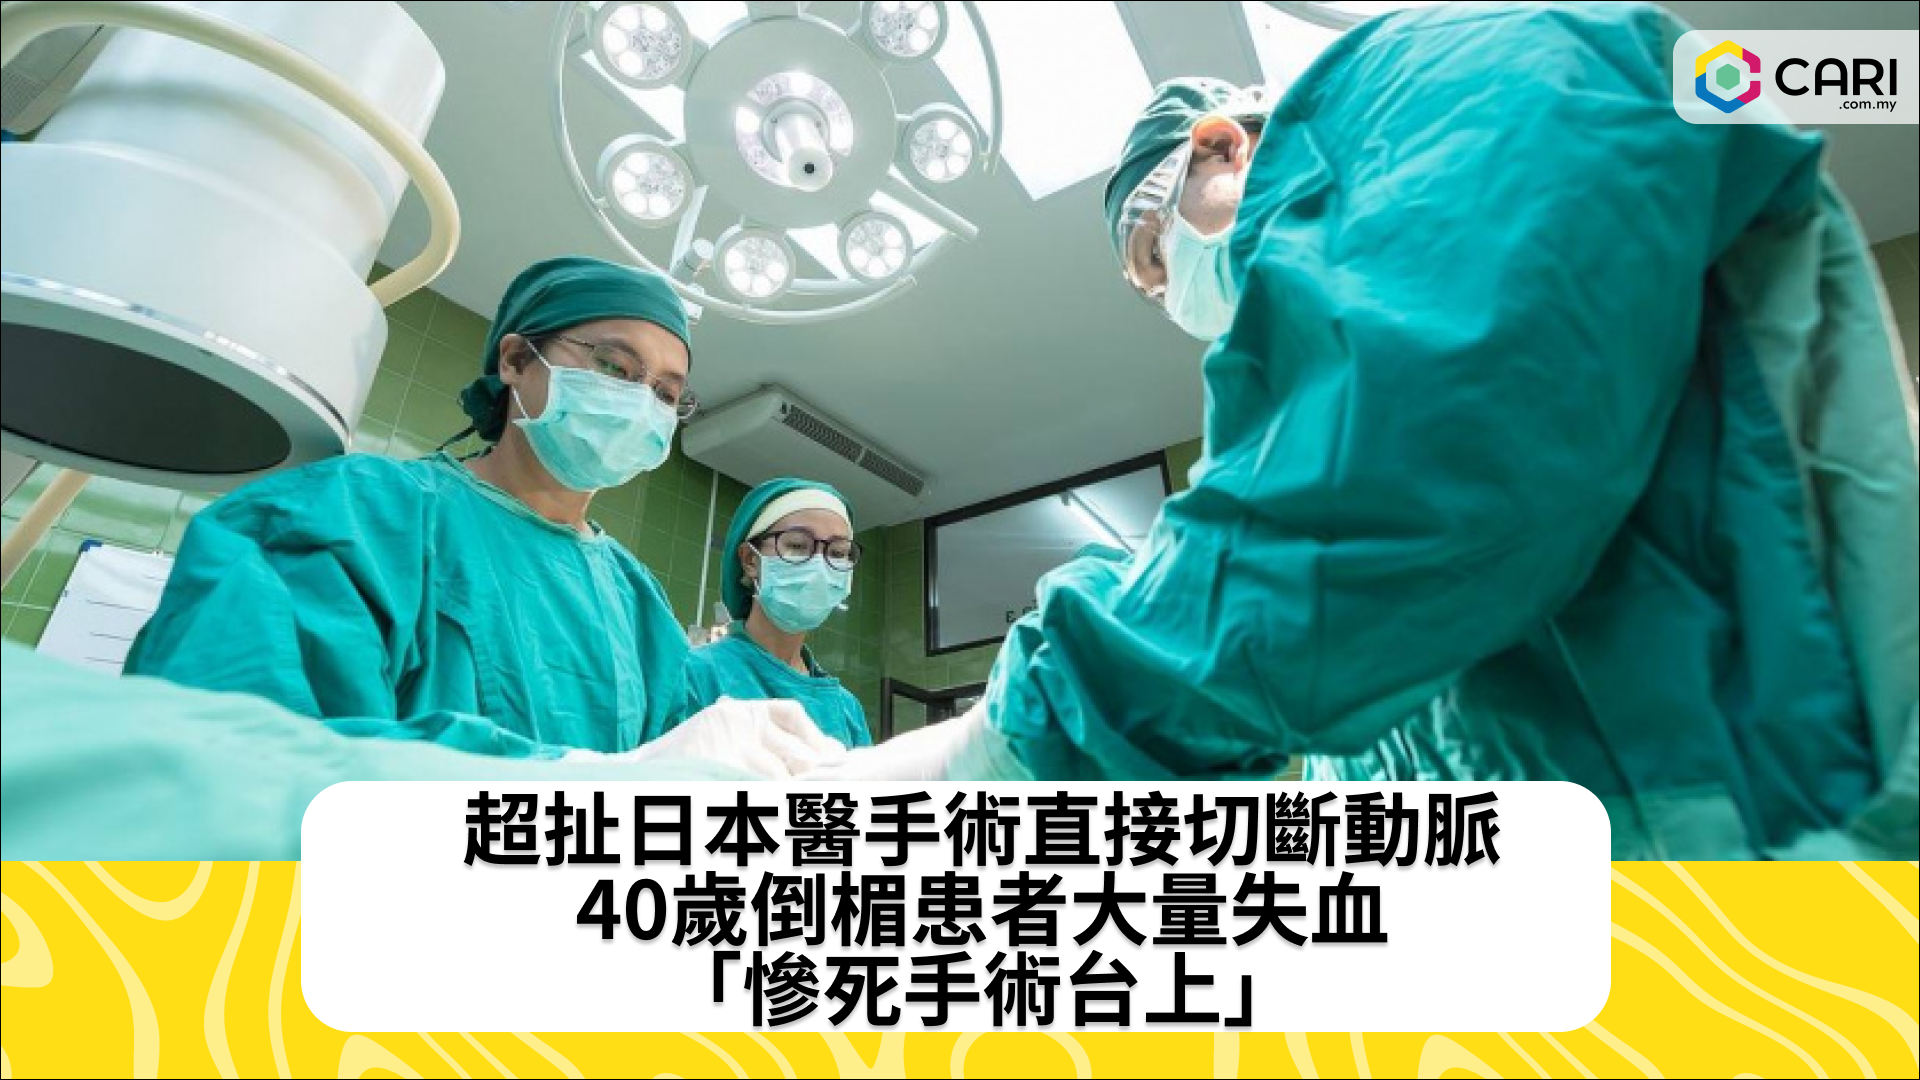 超扯日本醫手術直接切斷動脈　40歲倒楣患者大量失血「慘死手術台上」